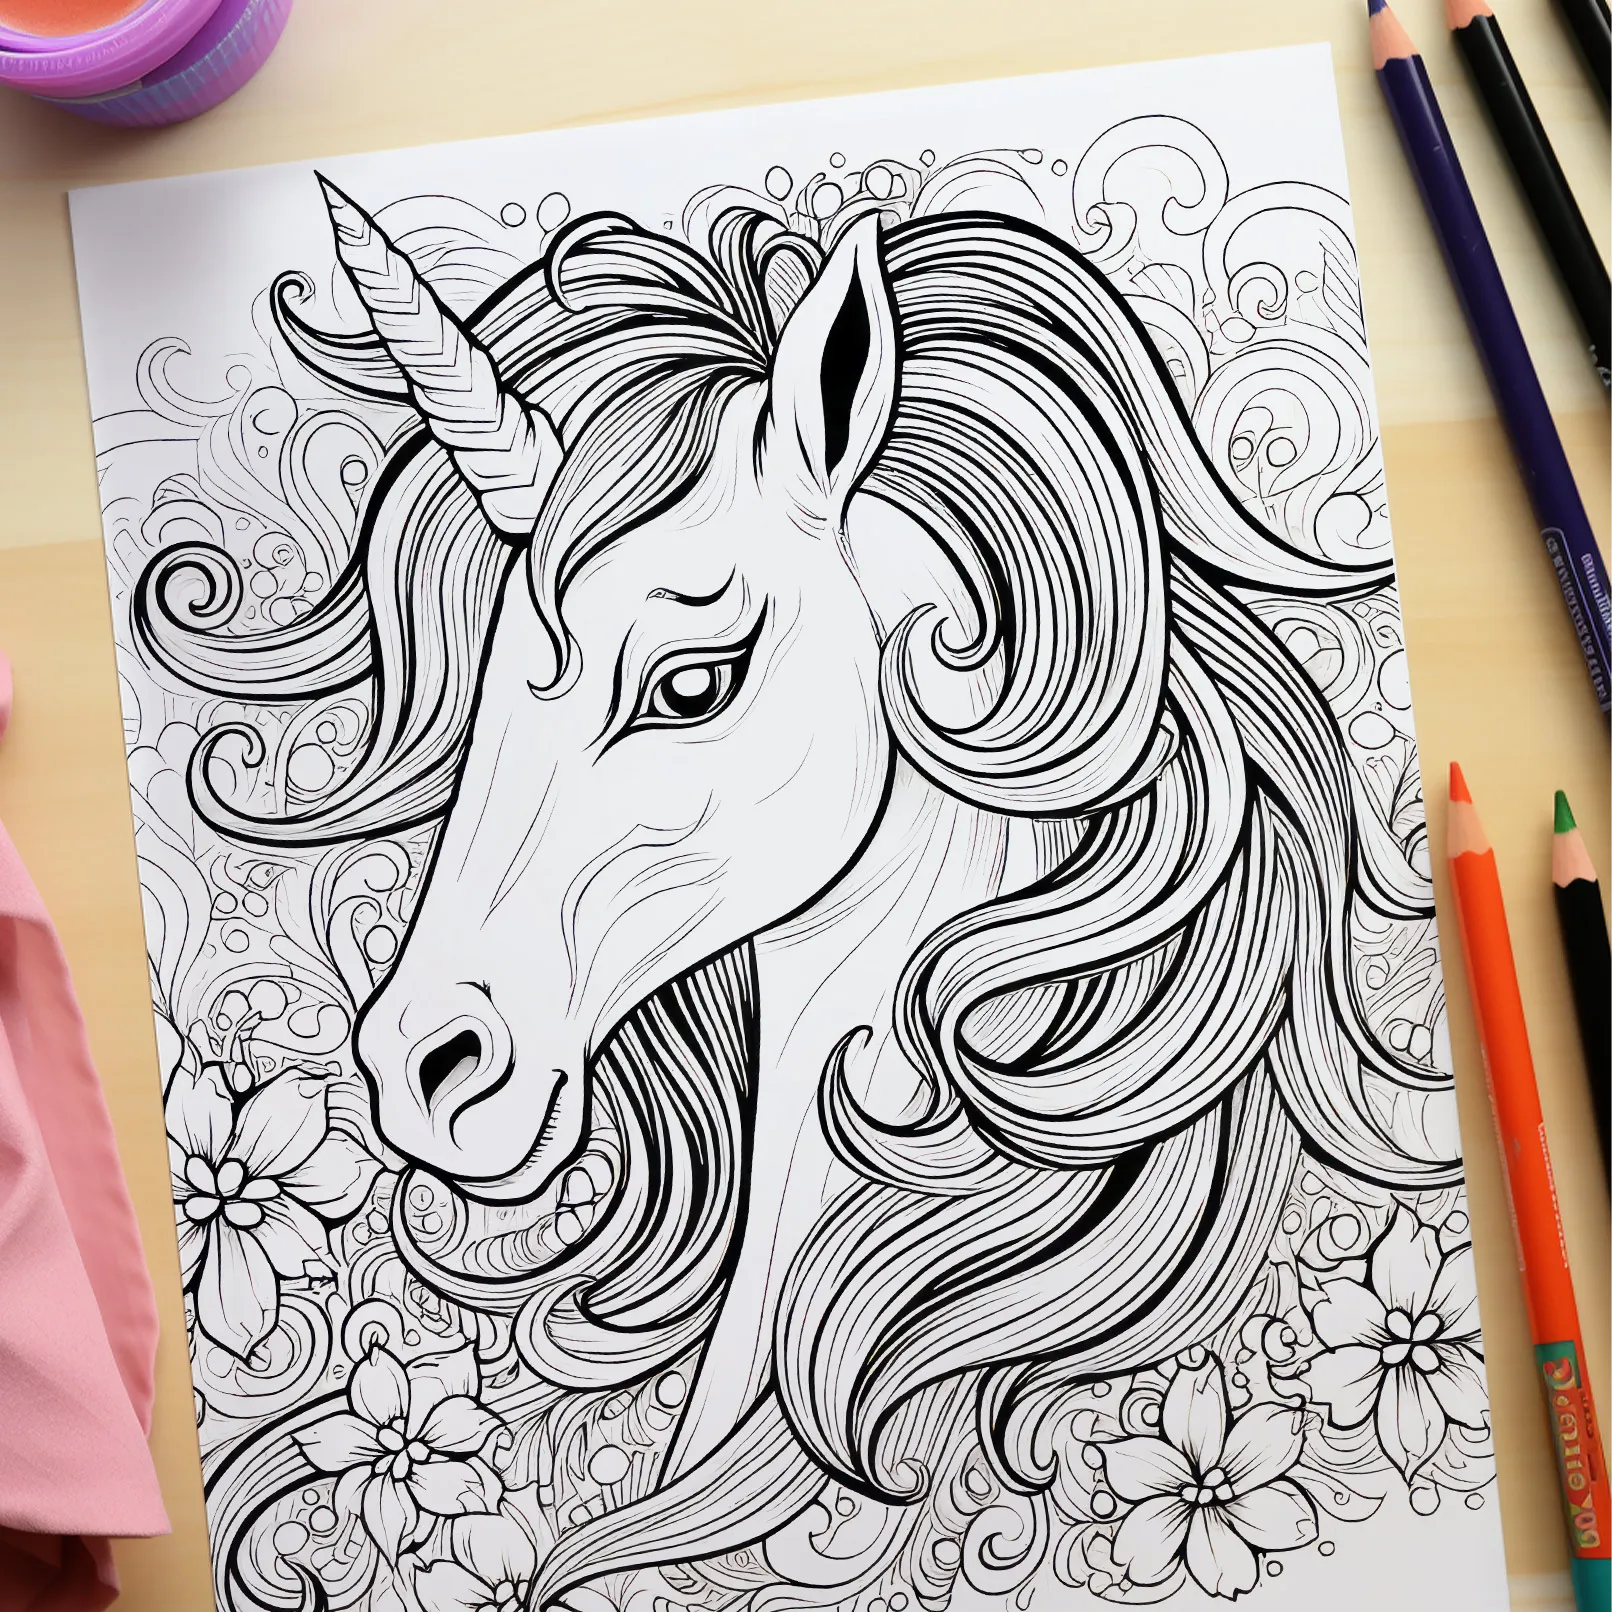 Disegni da colorare con unicorni da stampare.